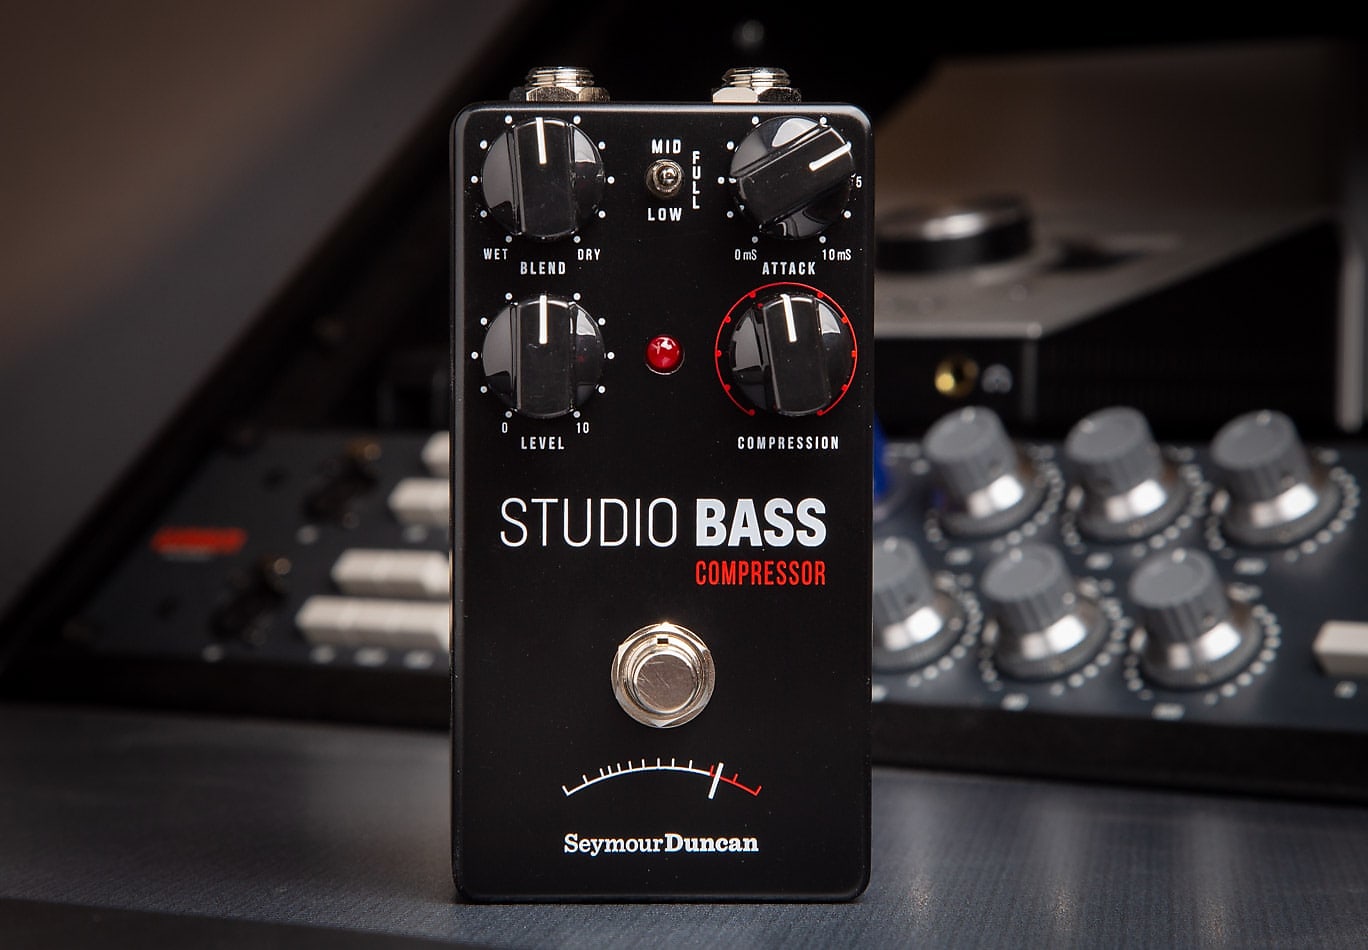 Seymour Duncan Studio Bass Compressor Effects Pedal